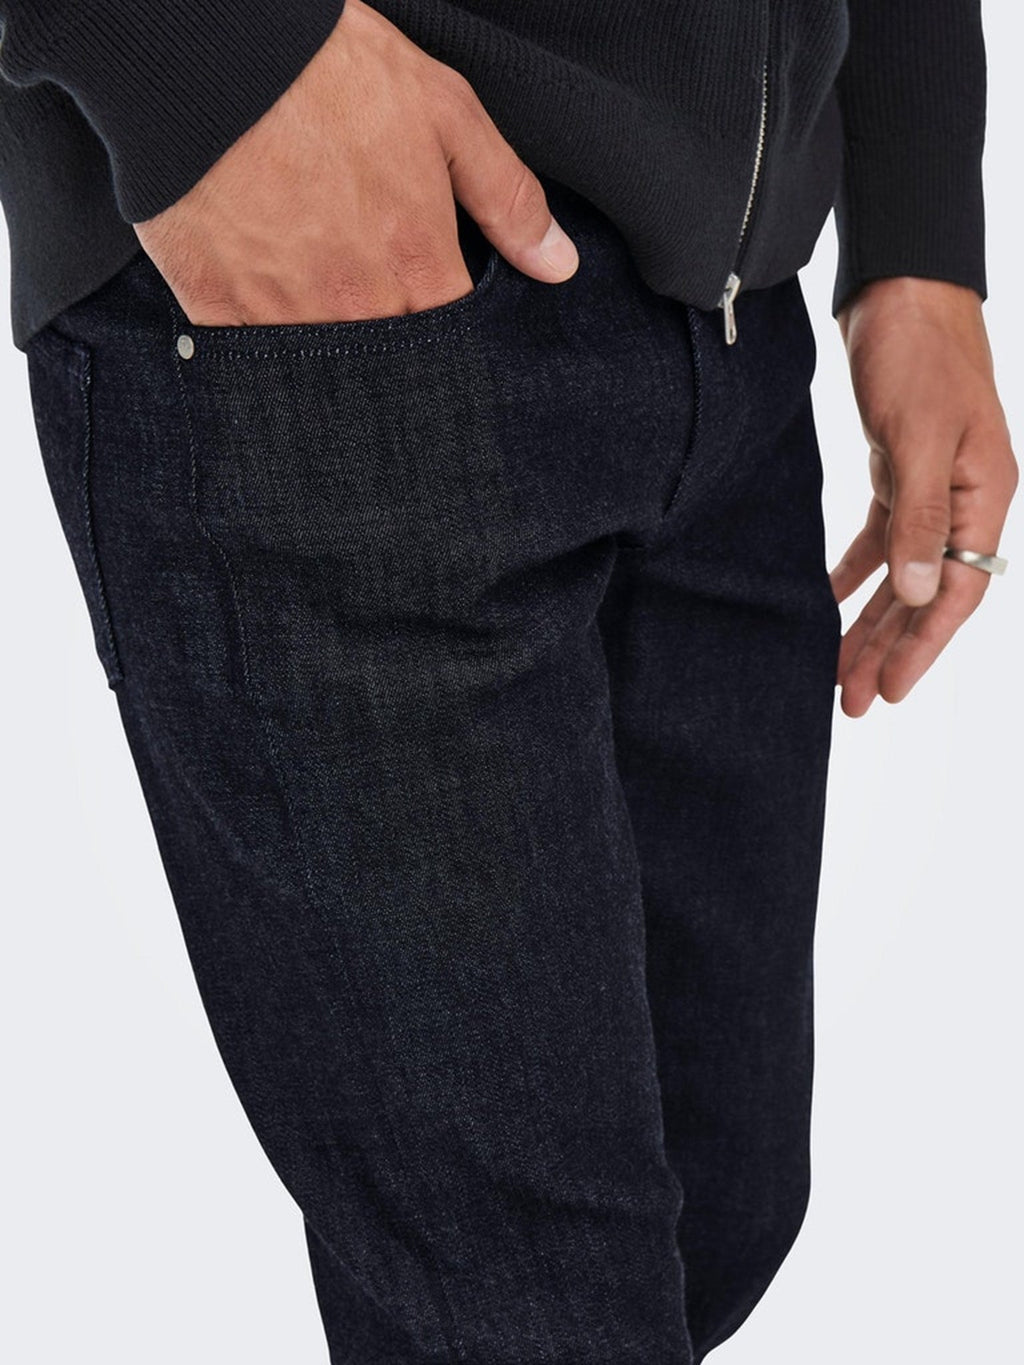 织机纤细的生牛仔裤 - 蓝色牛仔布